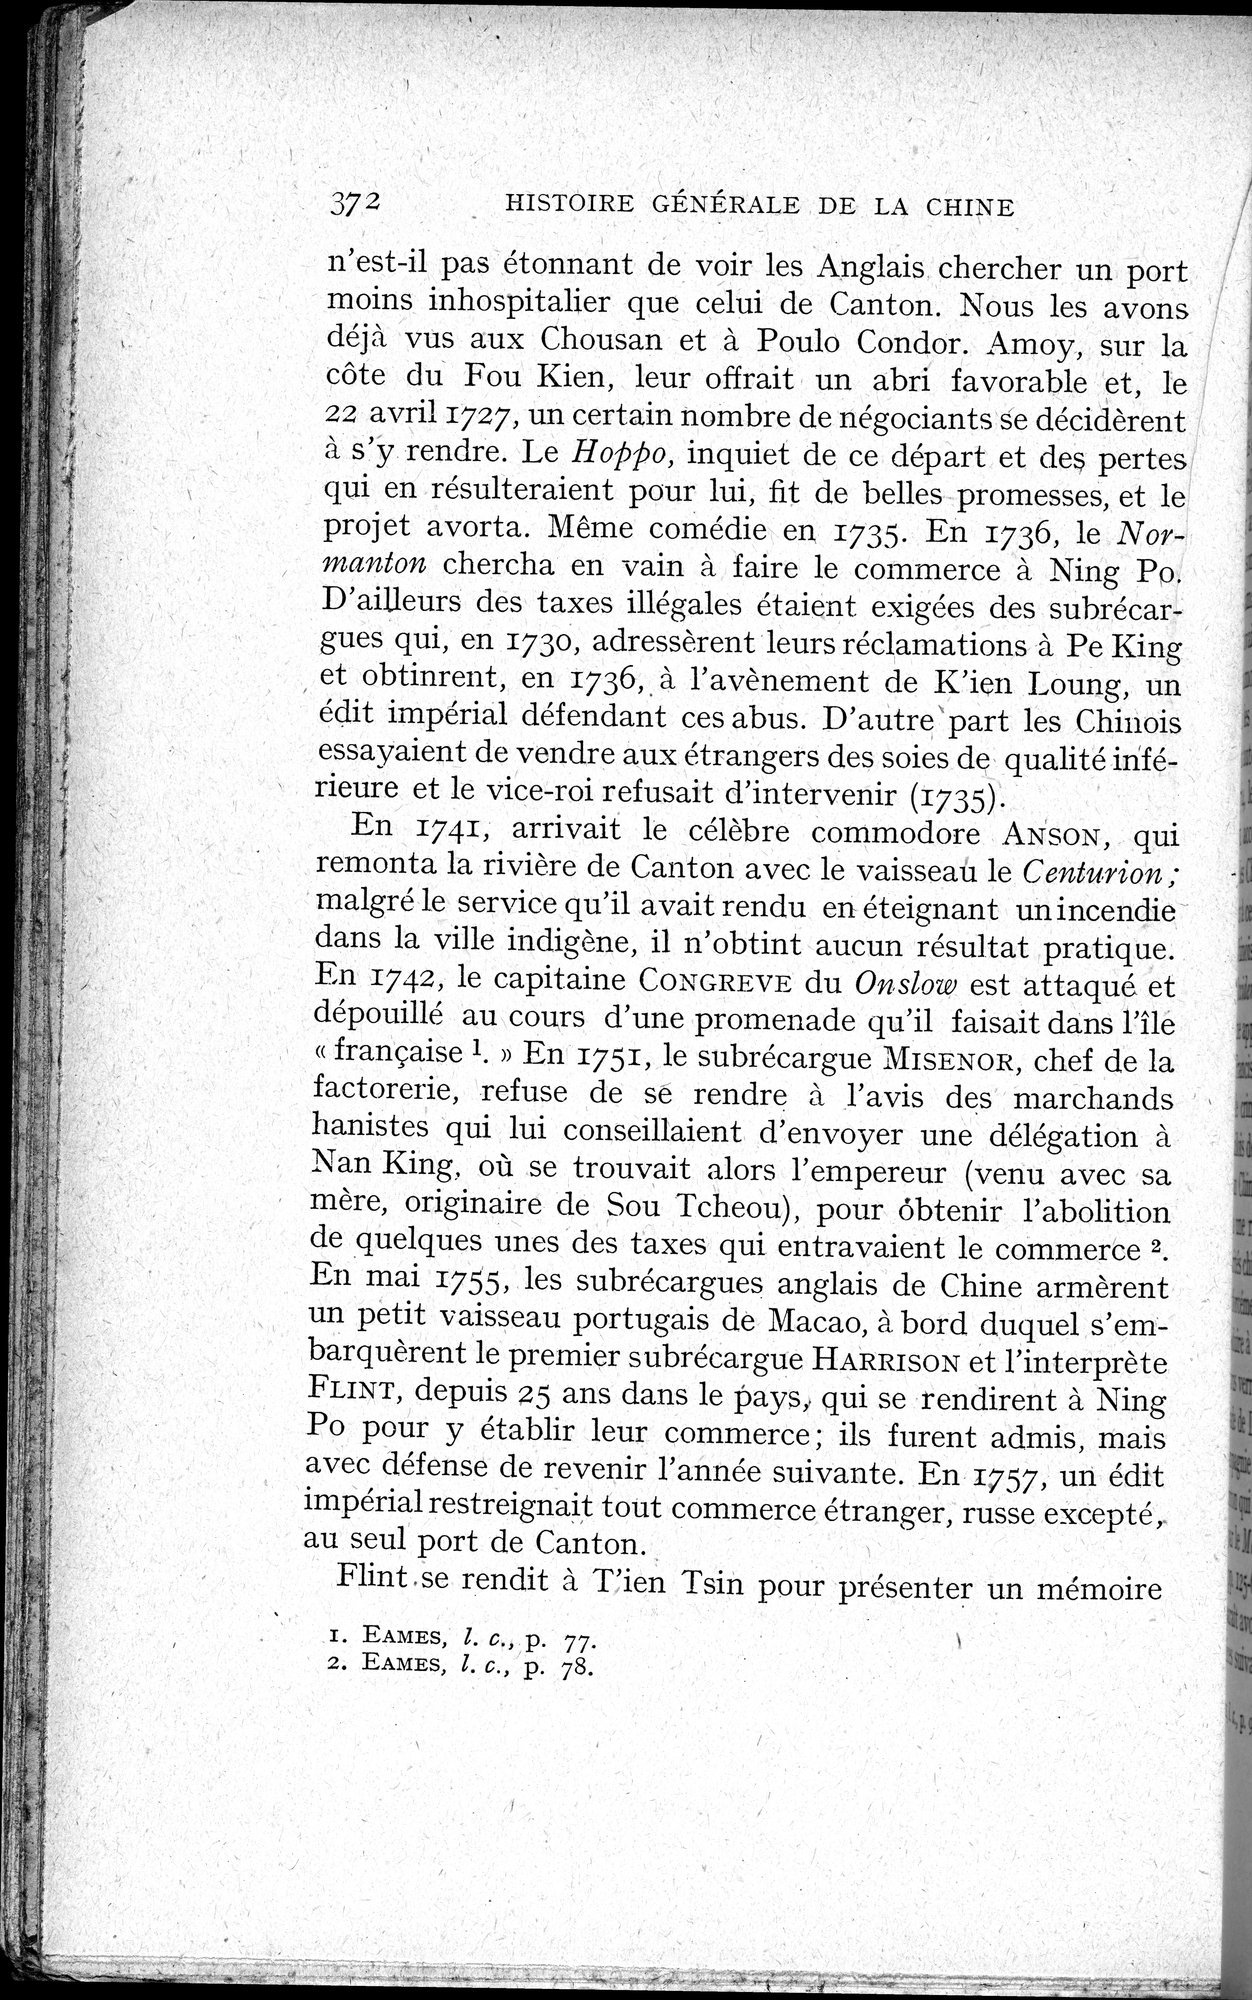 Histoire Générale de la Chine : vol.3 / Page 374 (Grayscale High Resolution Image)